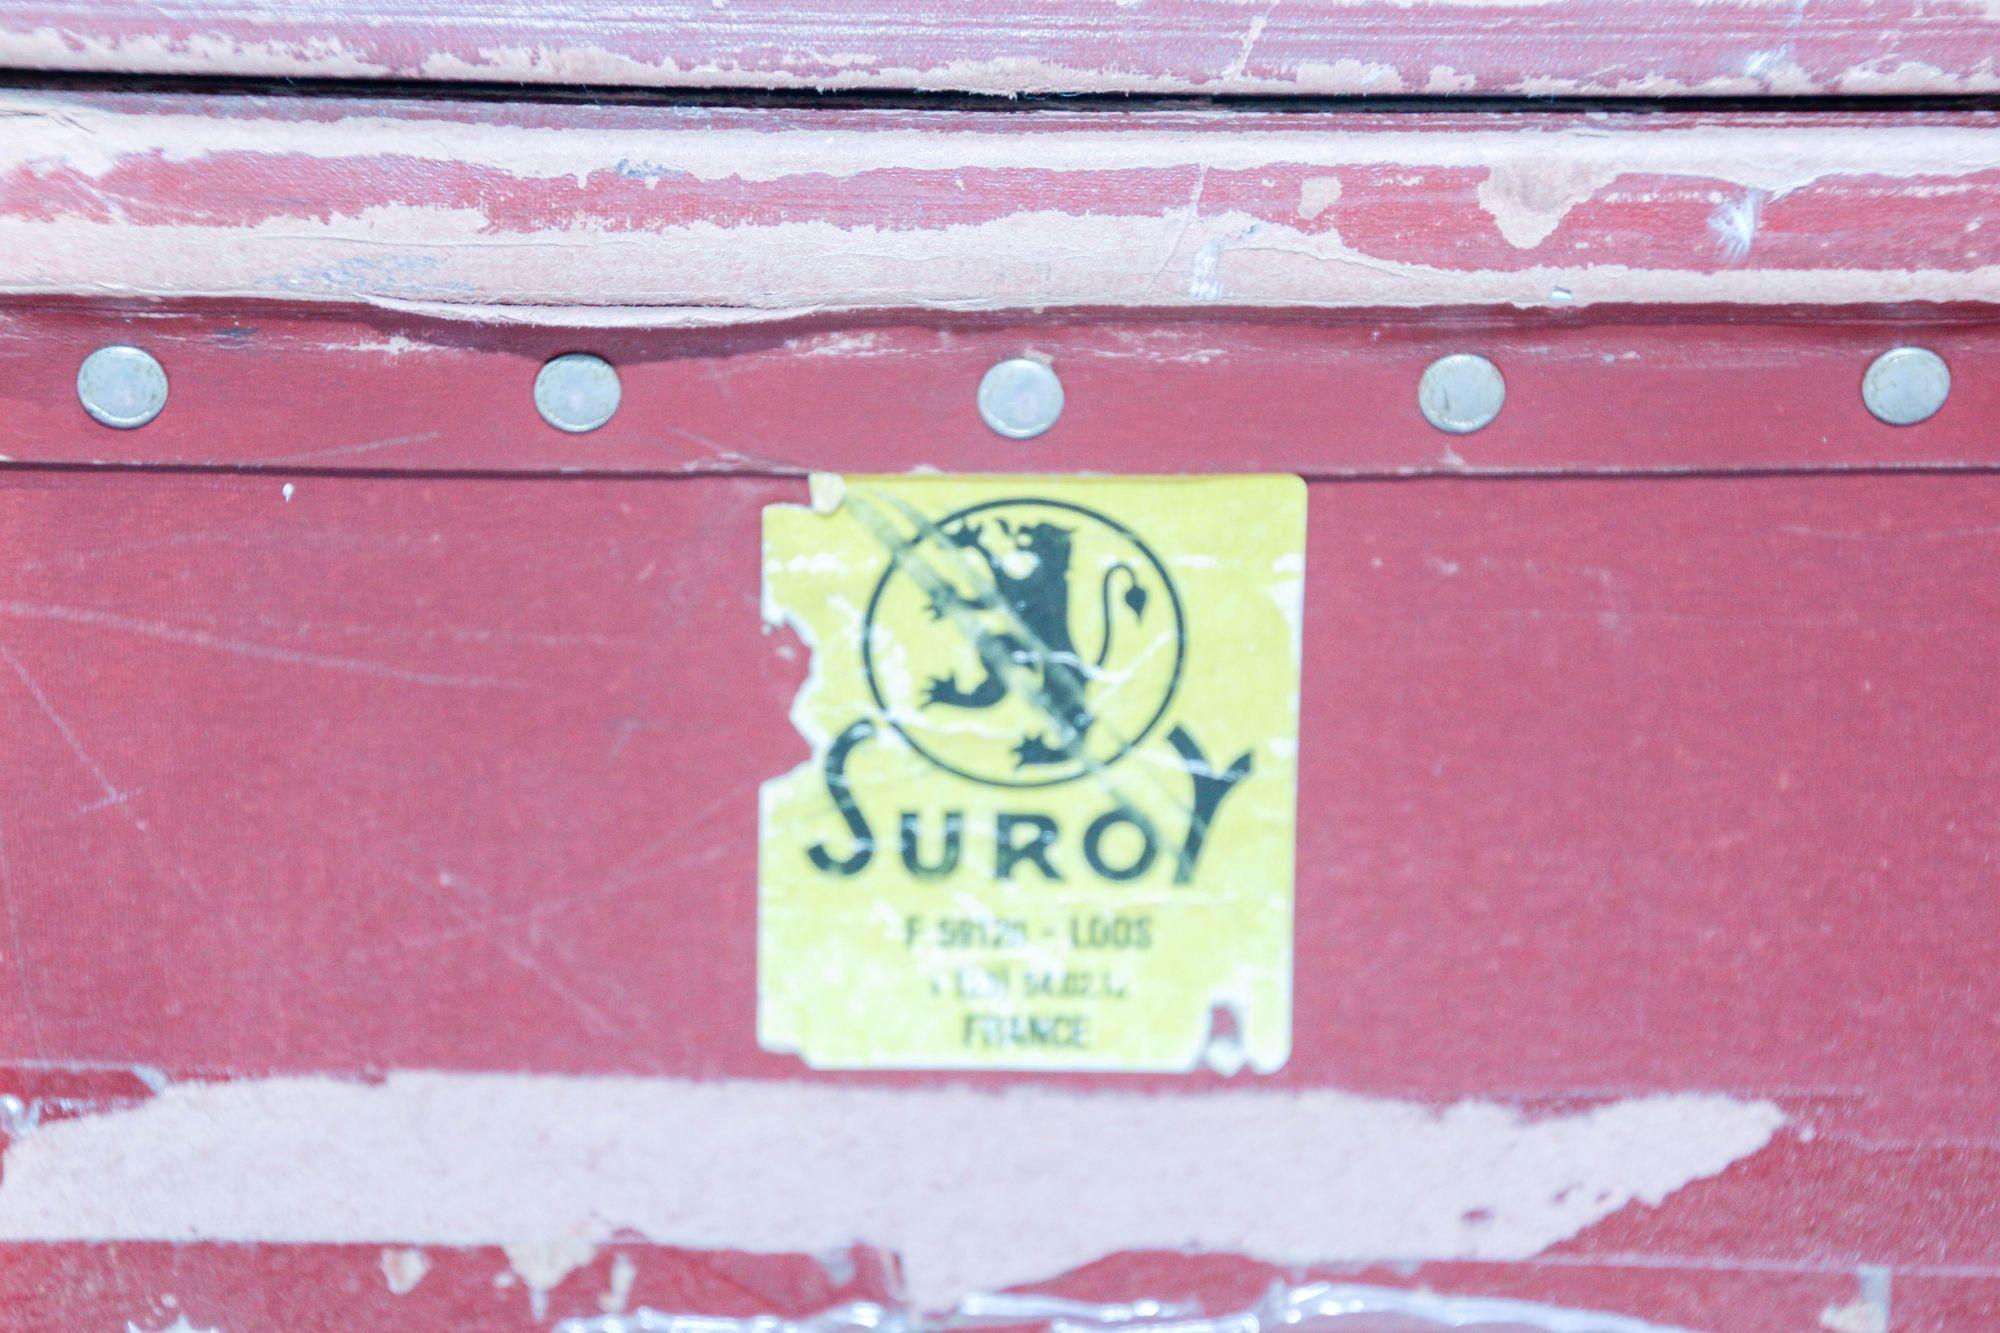 original dusty bin for sale